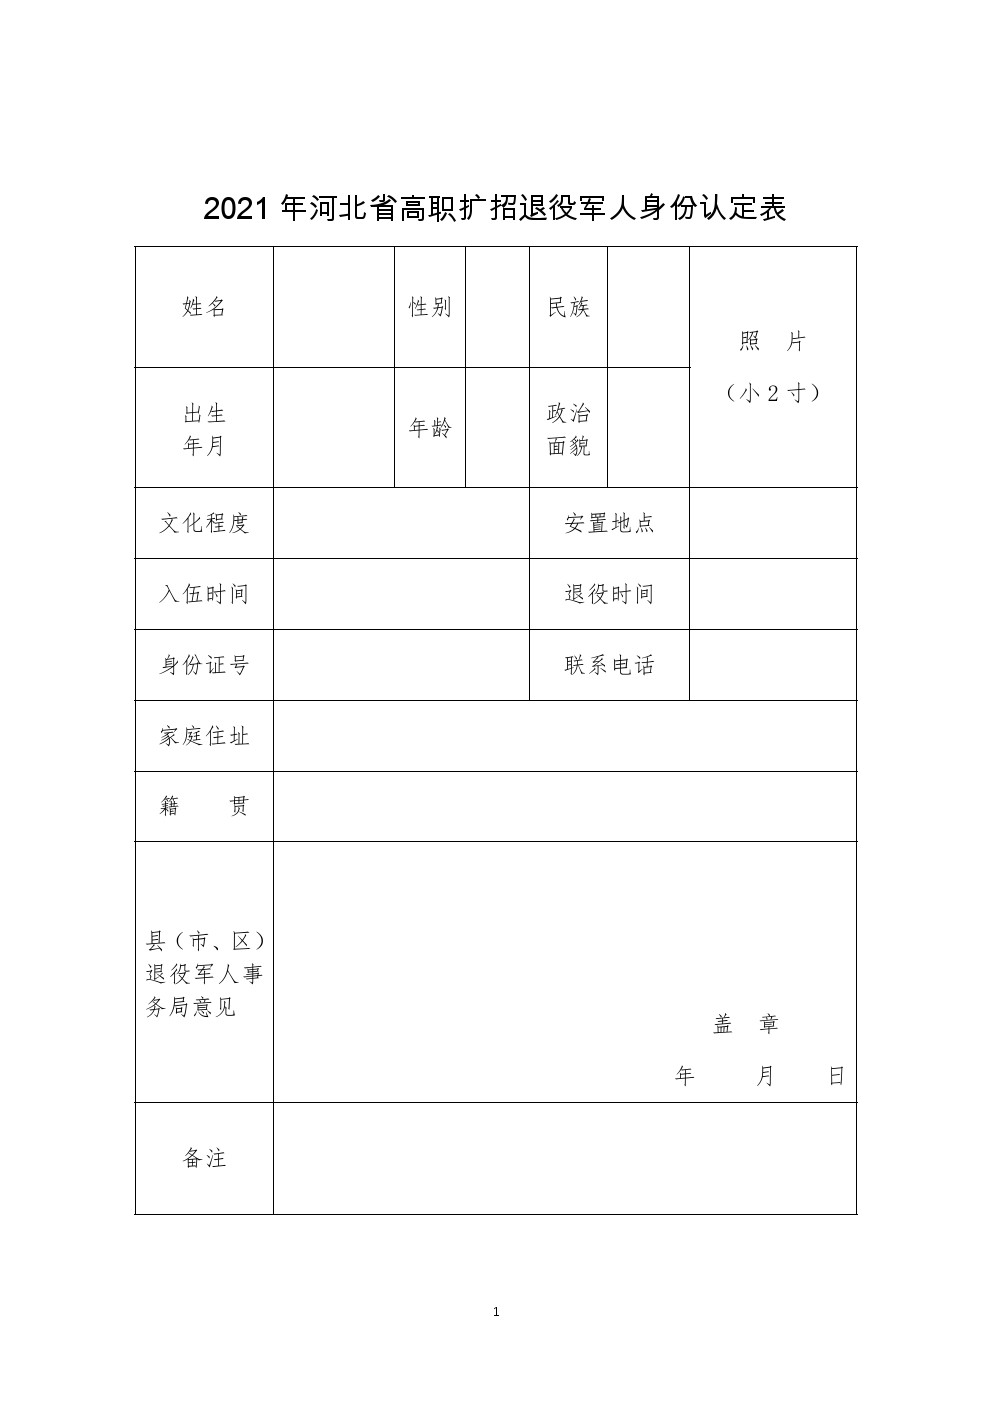 2021年河北省高职扩招退役军人身份认定表